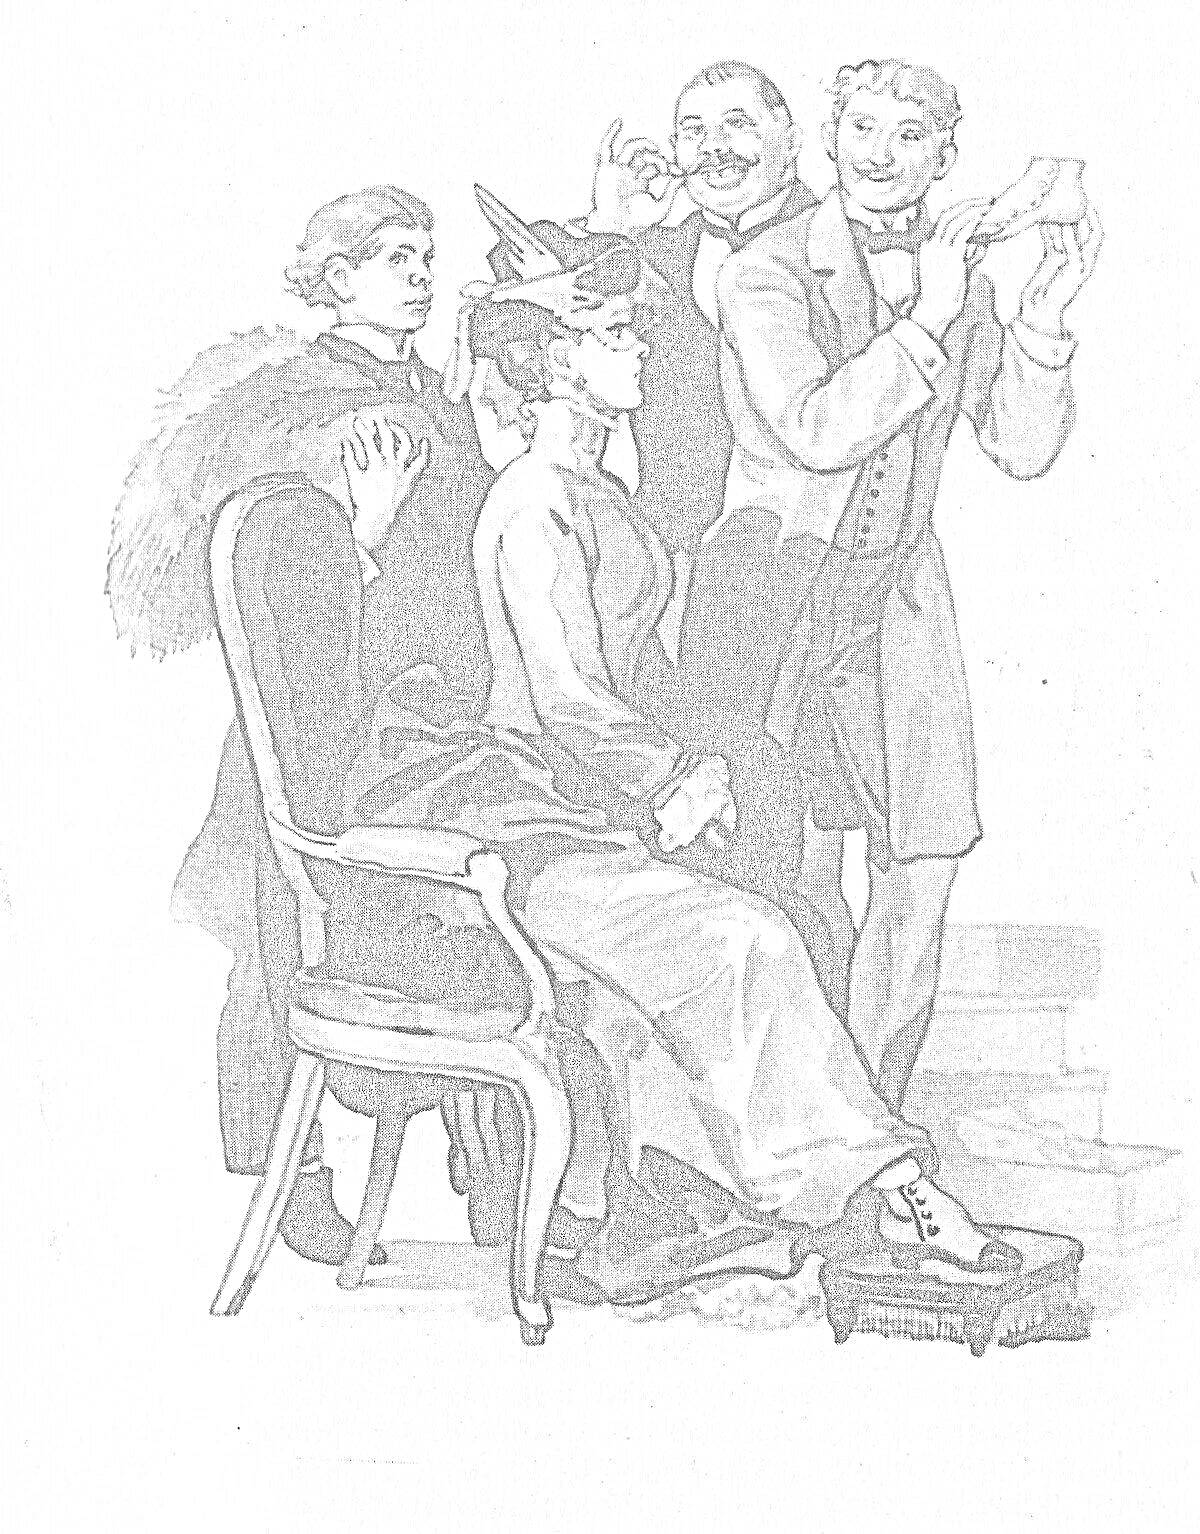 Раскраска Женщина сидит на стуле, мужчина с меховой накидкой стоит рядом, мужчина надевает туфлю другой женщине, еще один мужчина стоит за ними